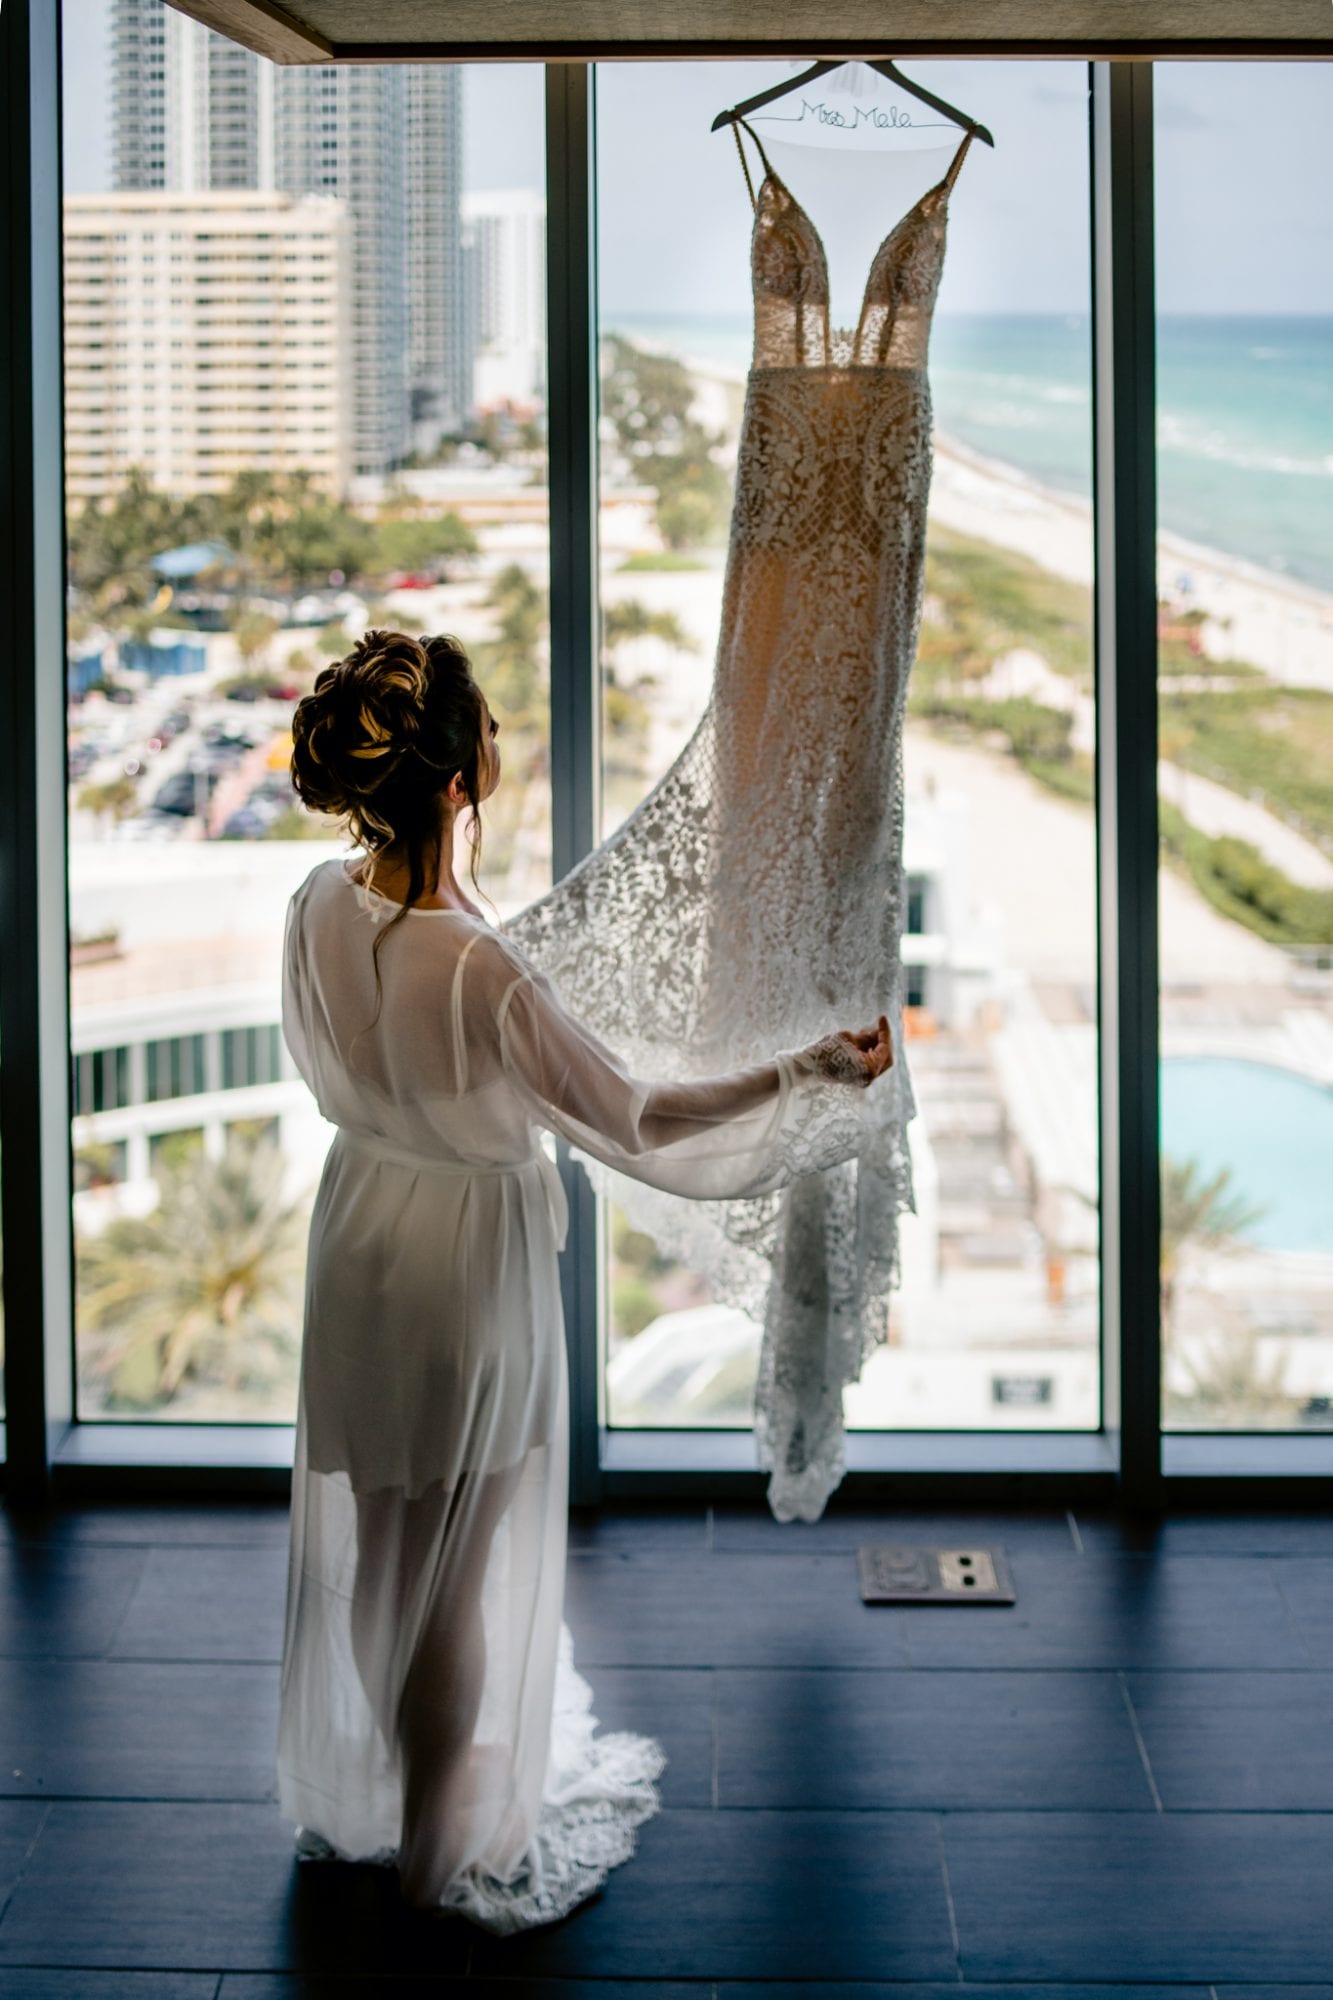 A bride hangs her wedding dress in front of a window overlooking the ocean at Eden Roc Resort in Miami.